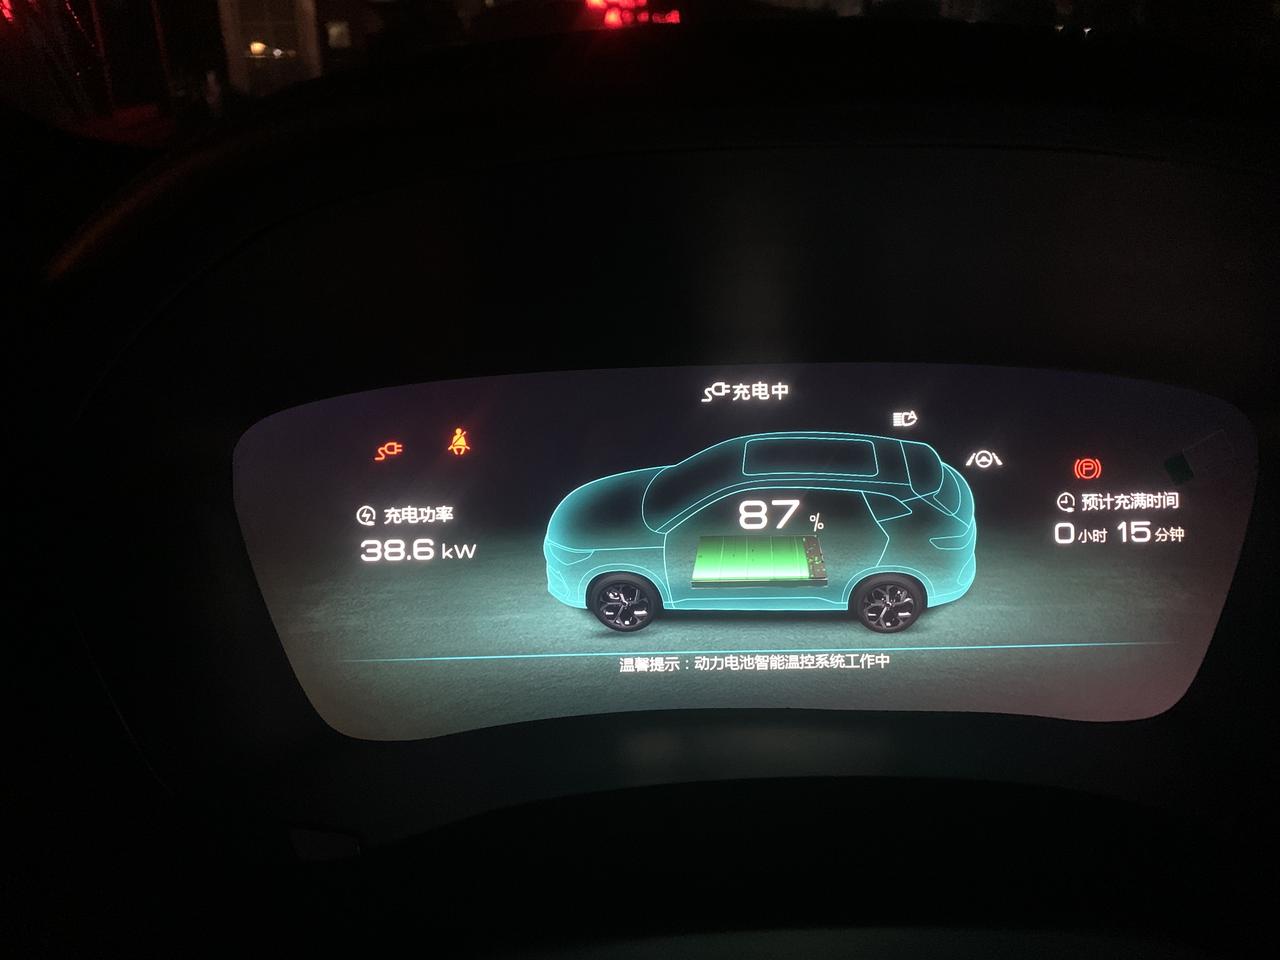 比亚迪宋PLUS EV 这车支持的最大直流快充的充电功率是多少？说明书说快充到80%，为啥还可以不断往上充